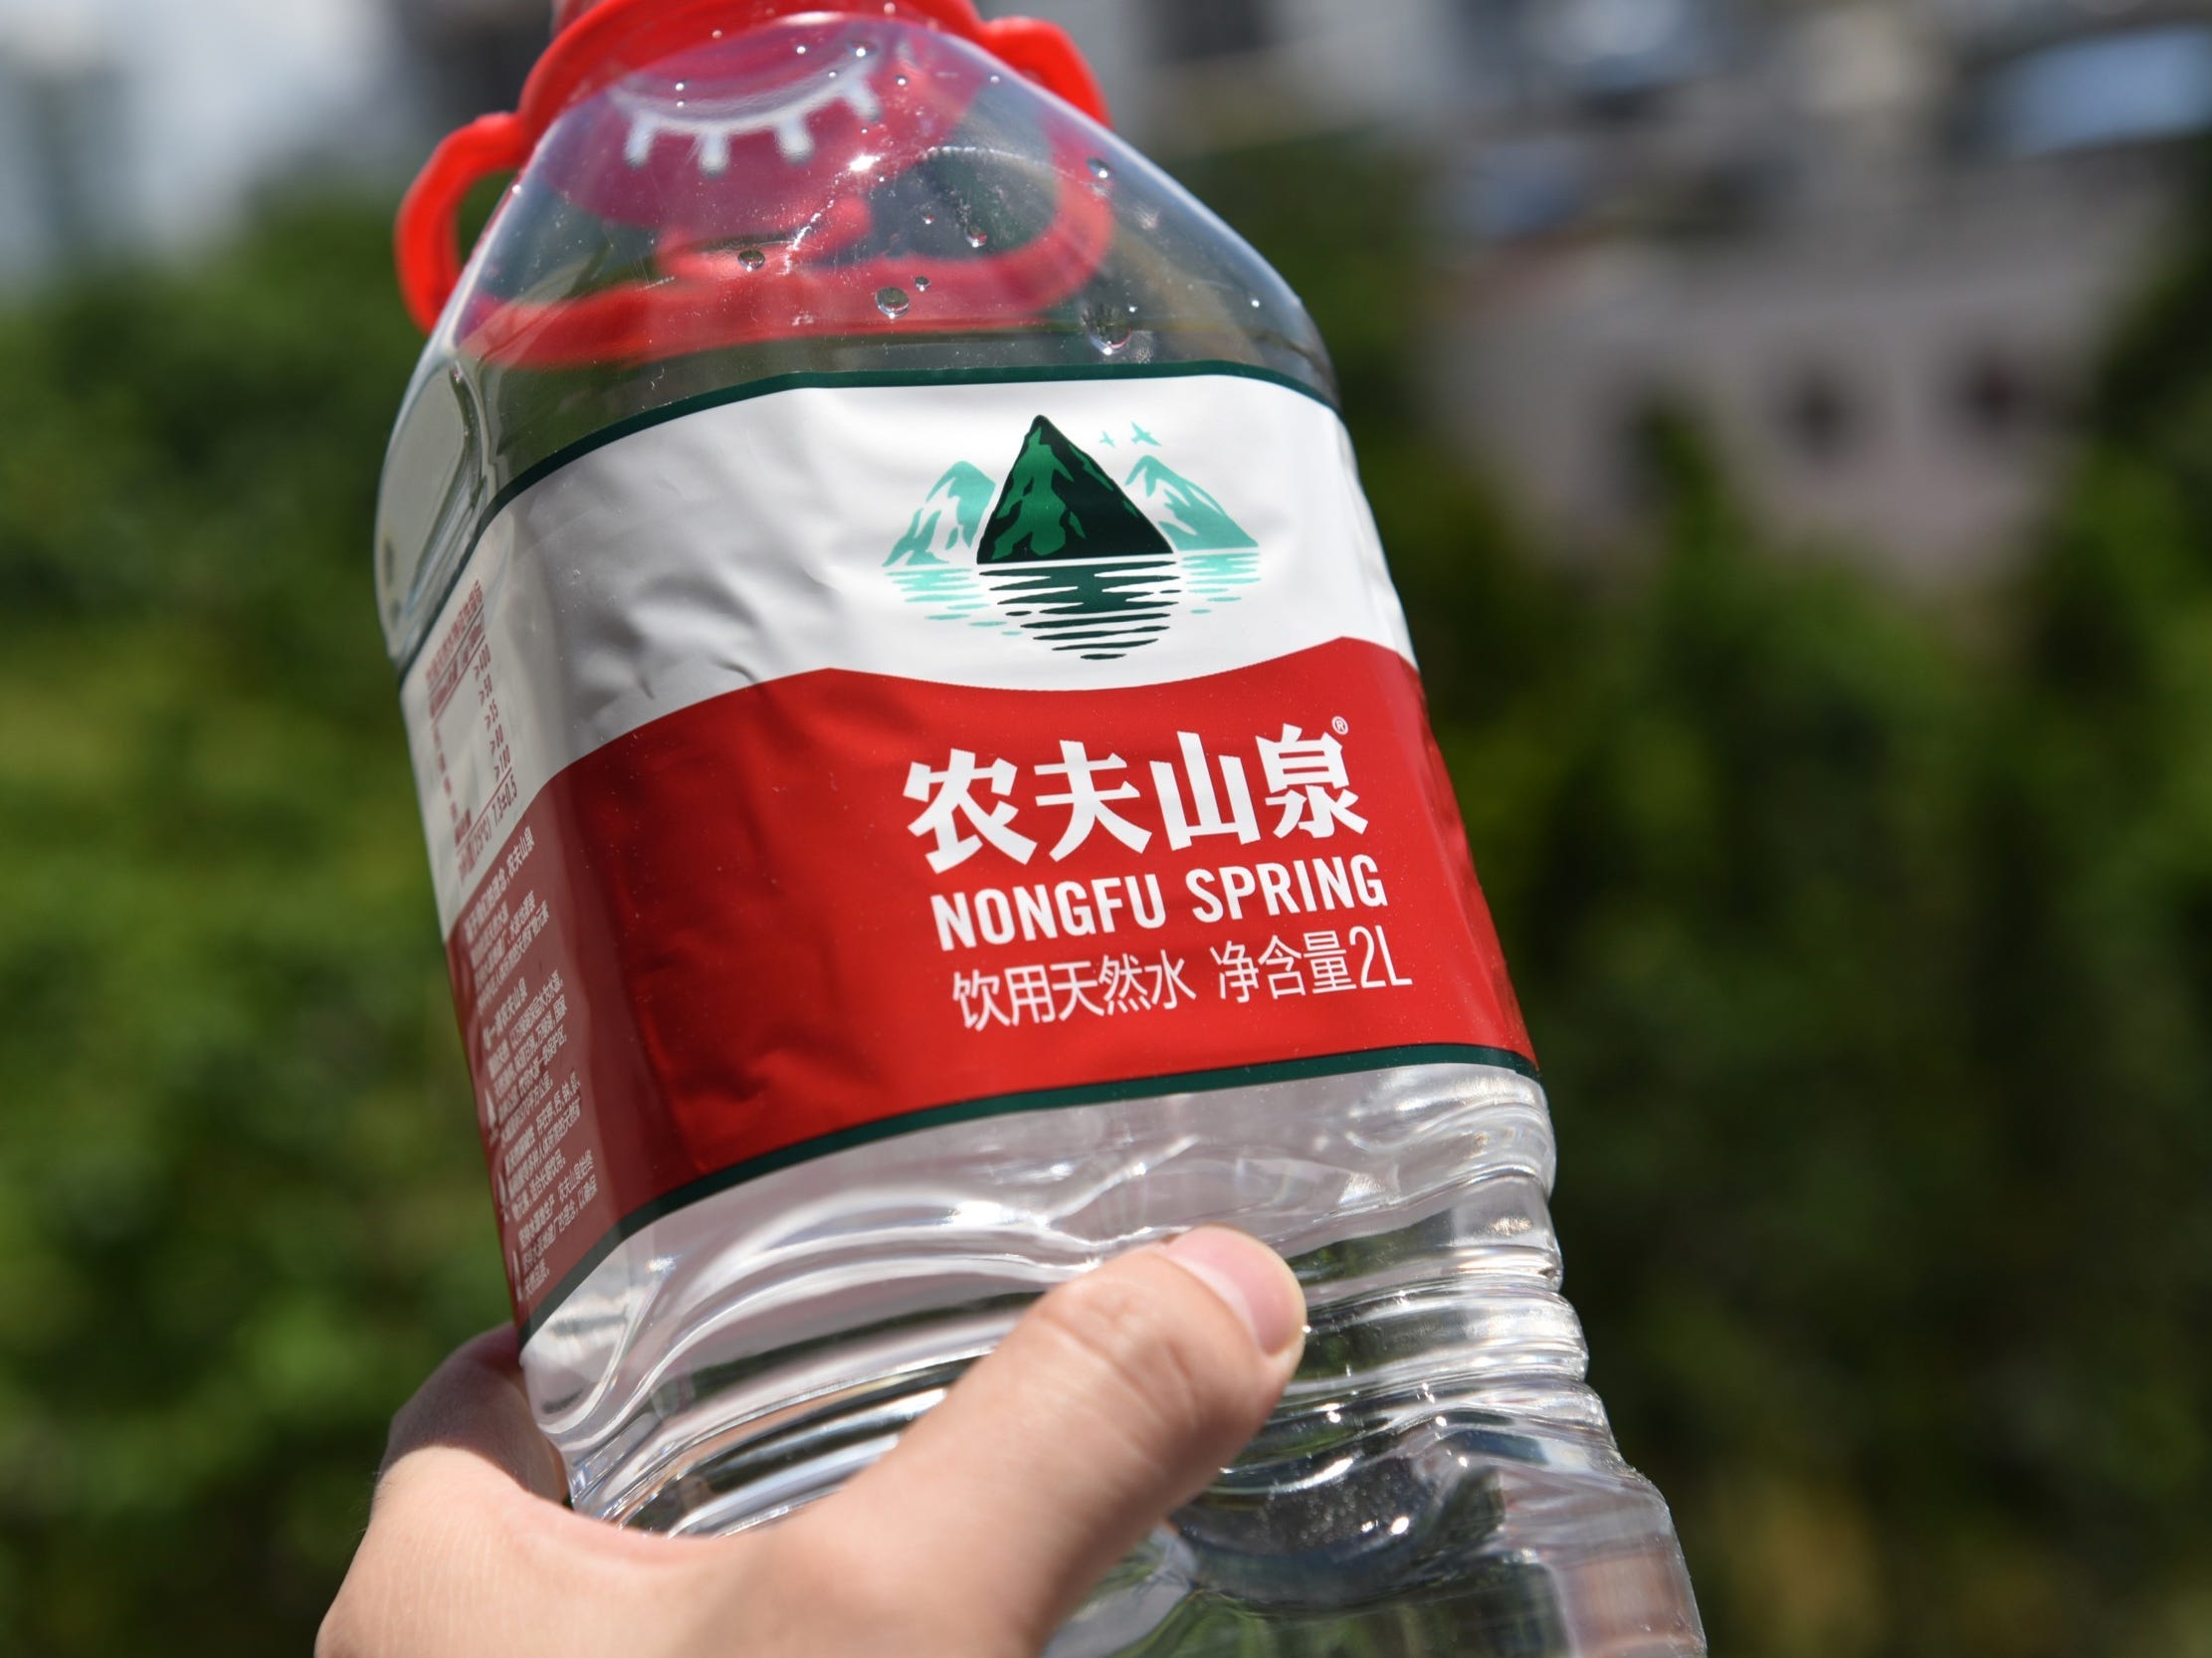 zhong shansan nongfu spring water bottle